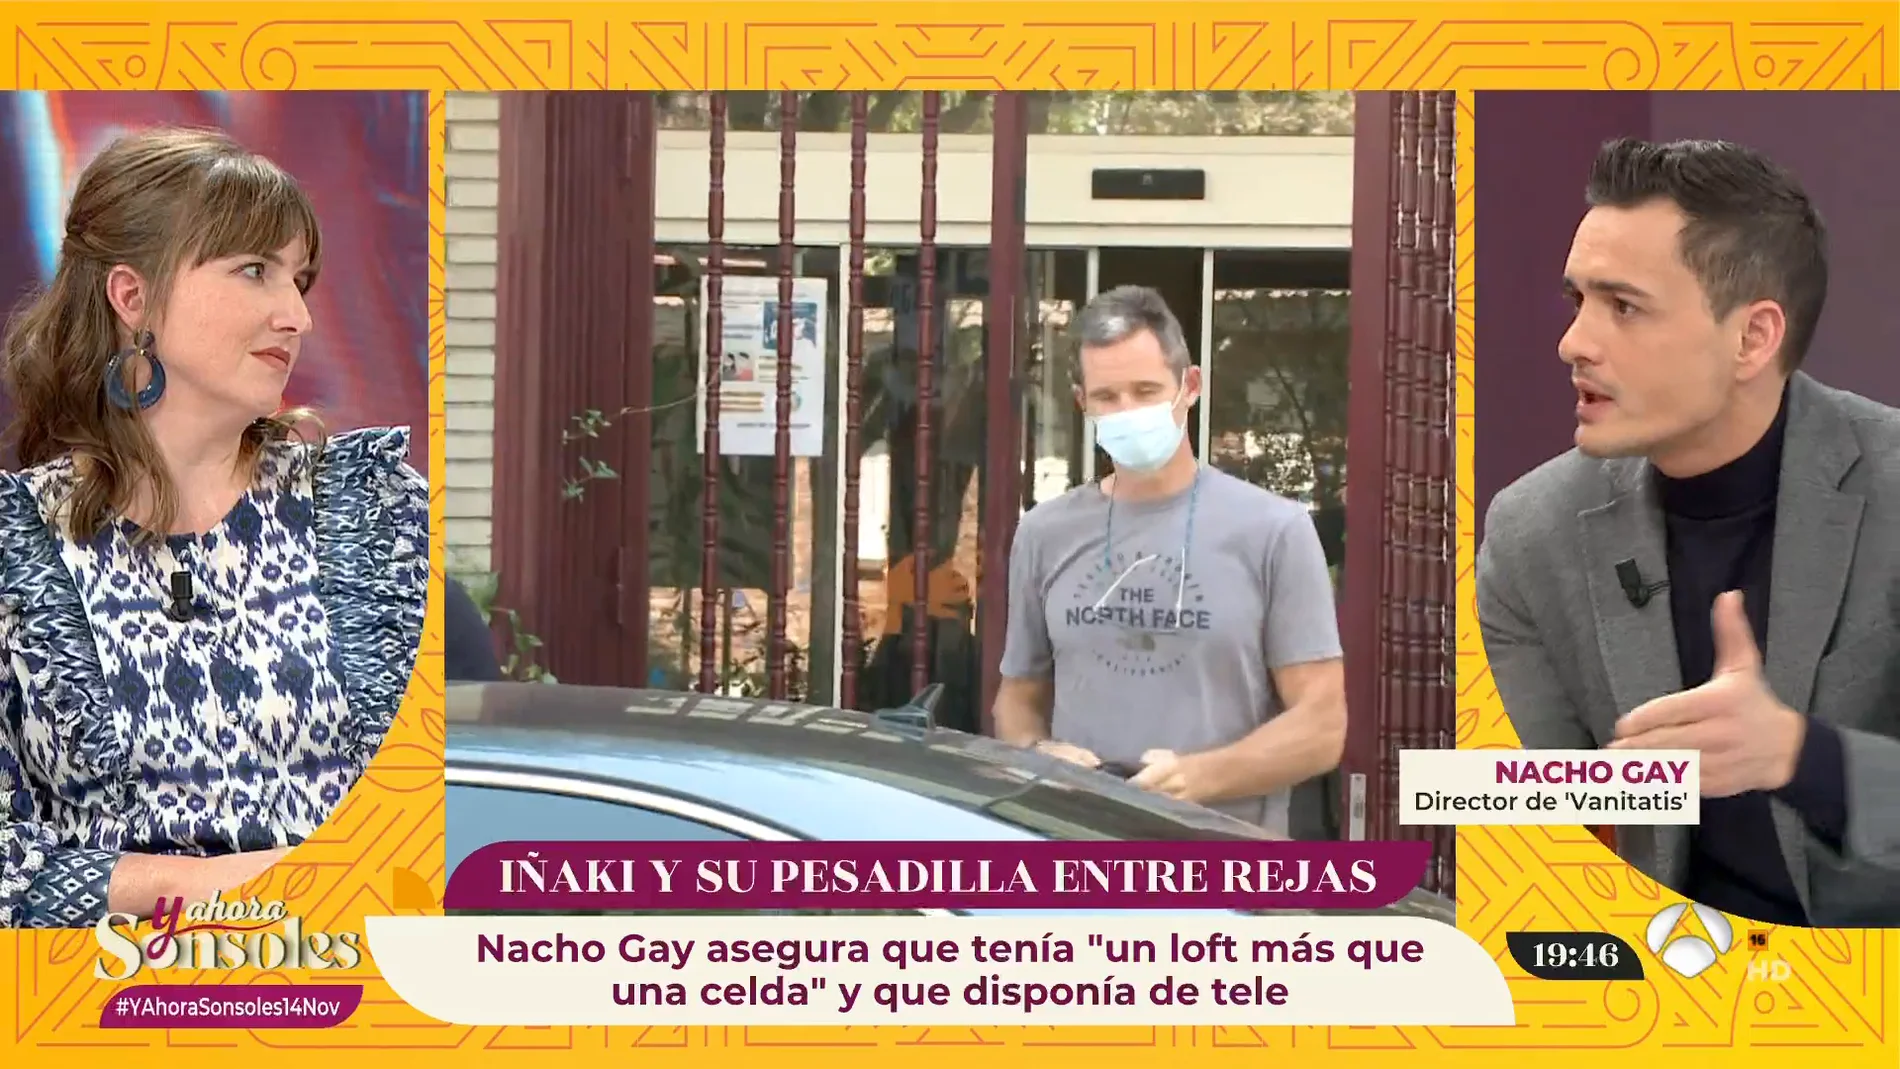 Nacho Gay, acerca de la estancia de Iñaki Urdangarin en prisión: "No era un preso común"